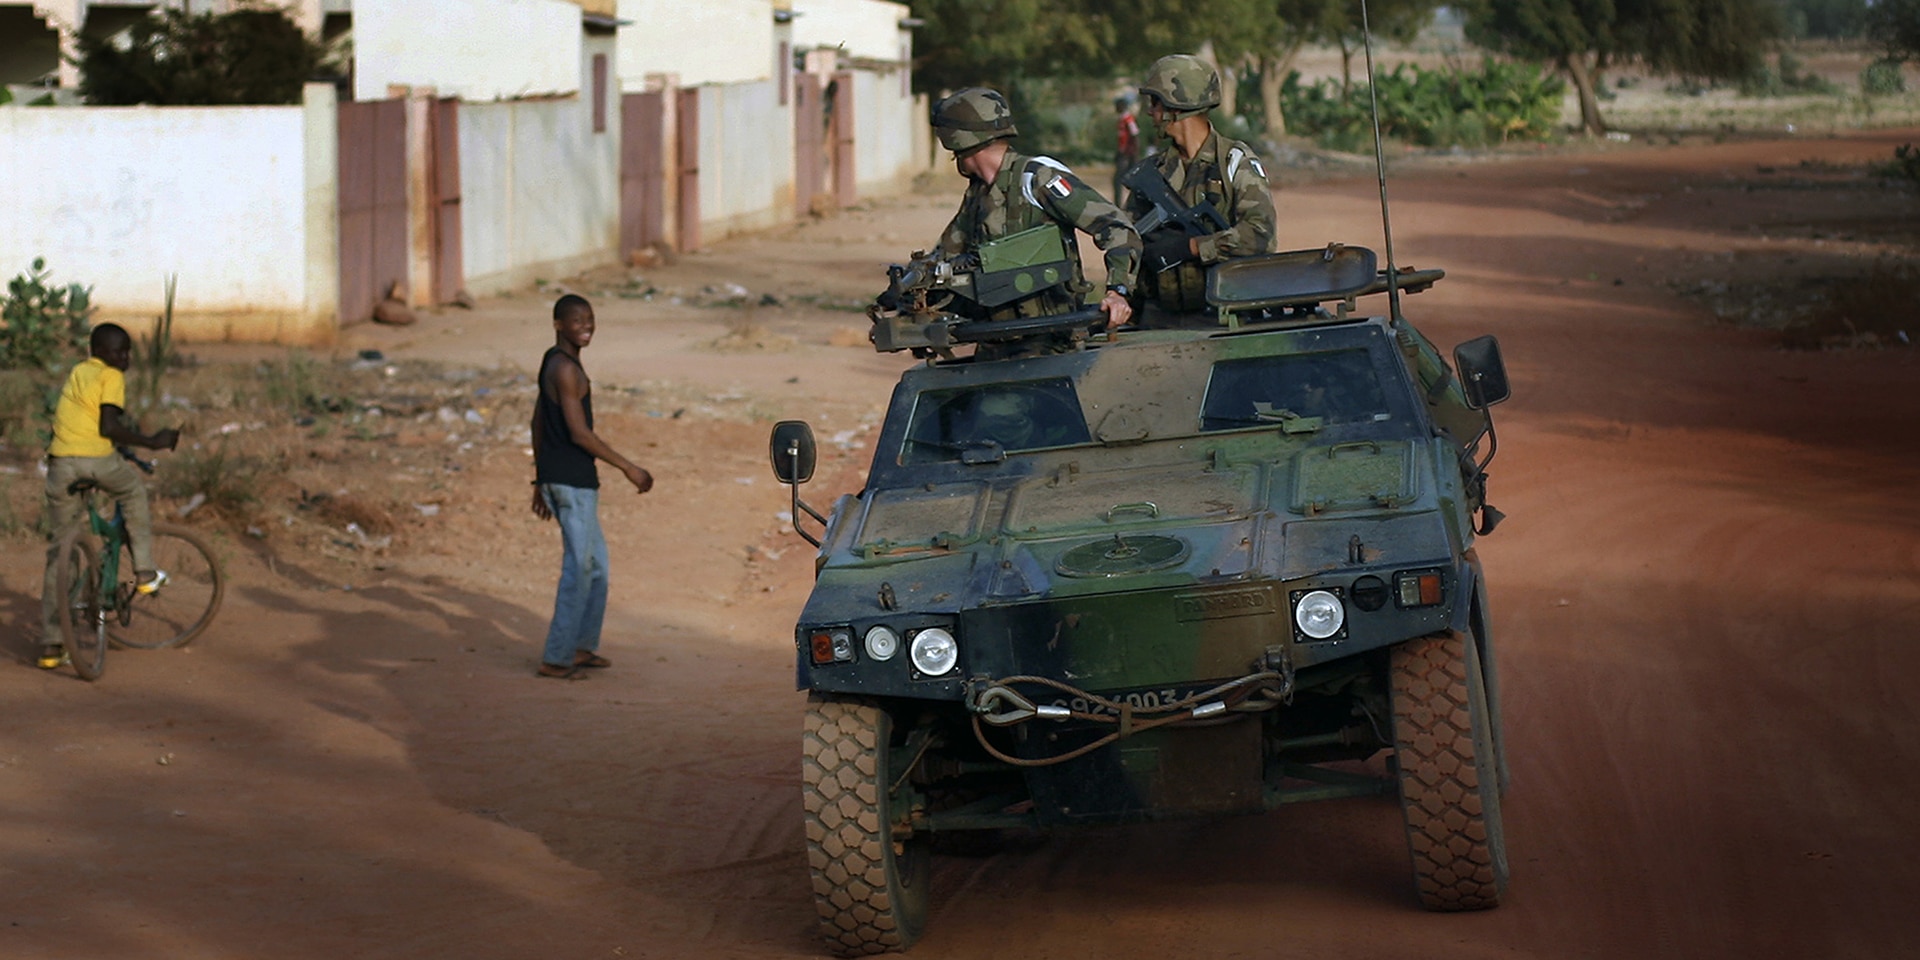 Un veicolo militare che trasporta due soldati passa davanti a dei giovani in una zona di conflitto del Mali.  